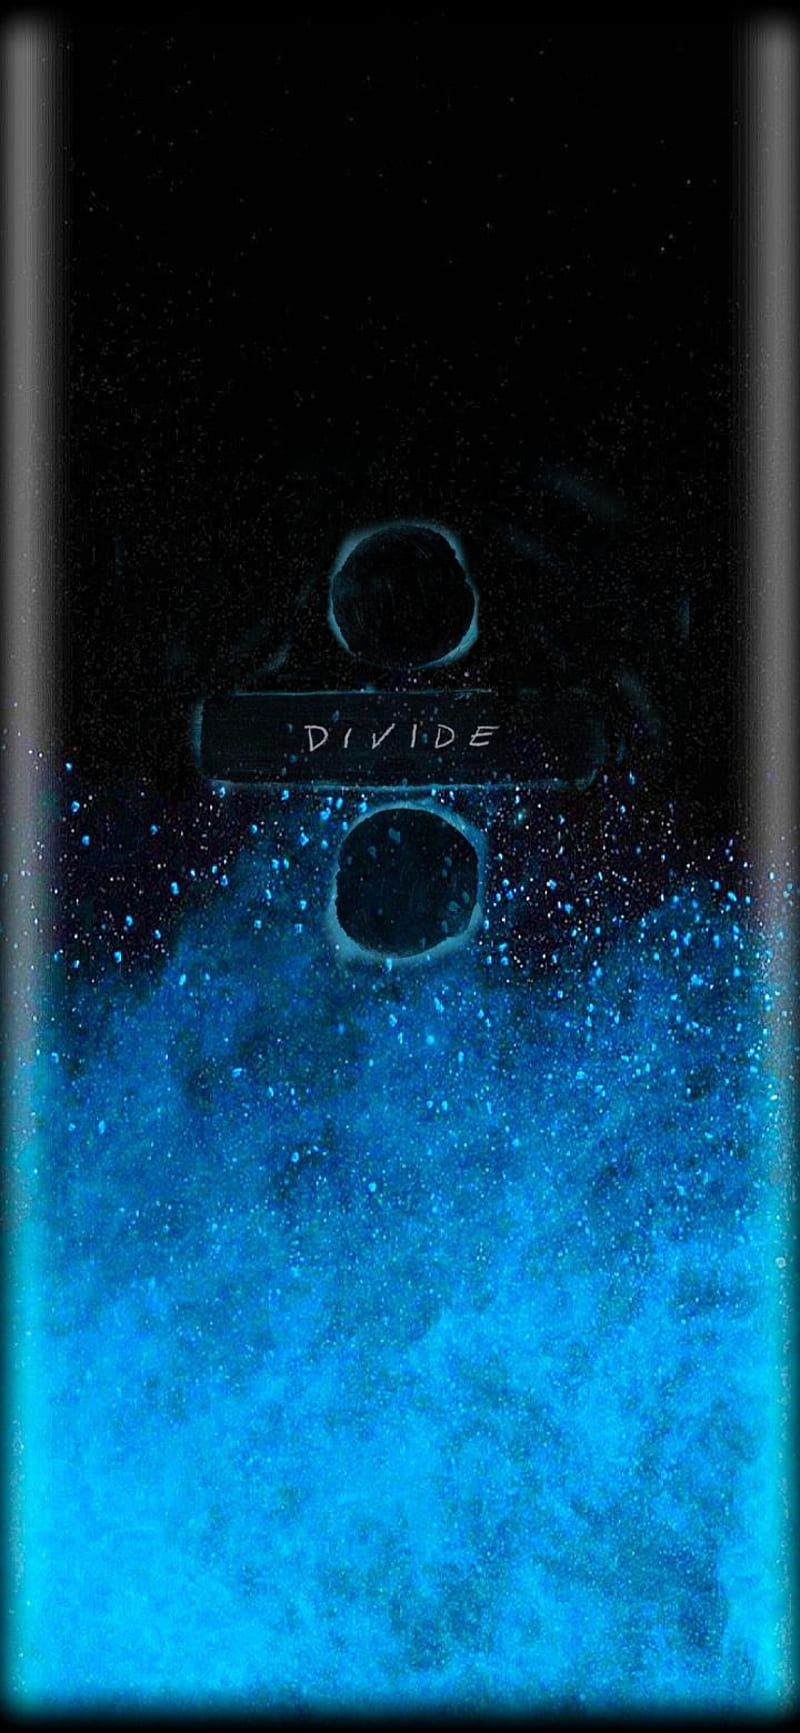 Divide ed sheeran, bello, music, HD phone wallpaper